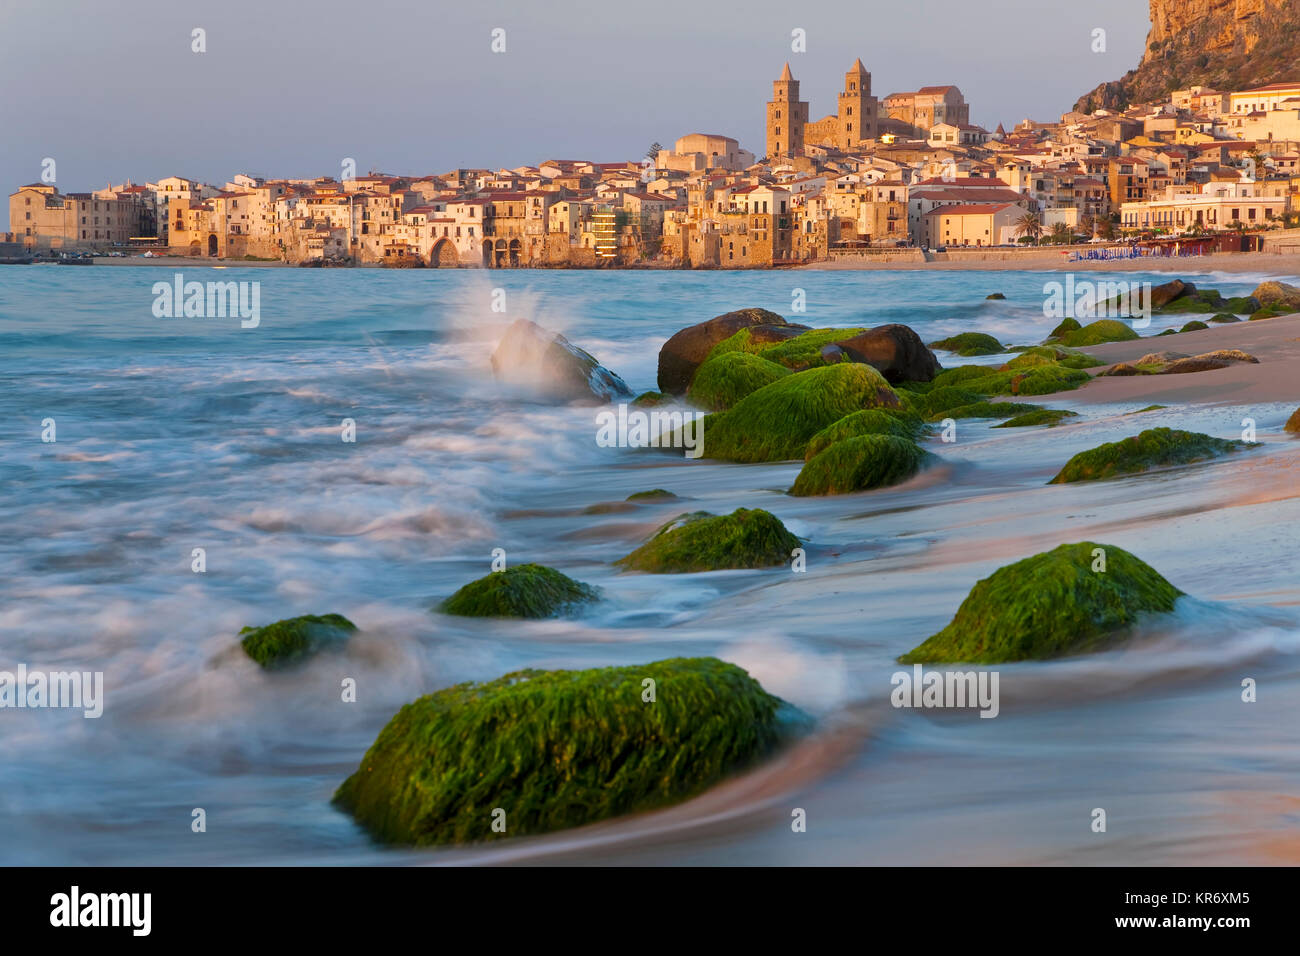 Blick entlang der Küste mit Sandstrand, Felsen, mit grünen Algen, die Stadt in der Ferne. Stockfoto